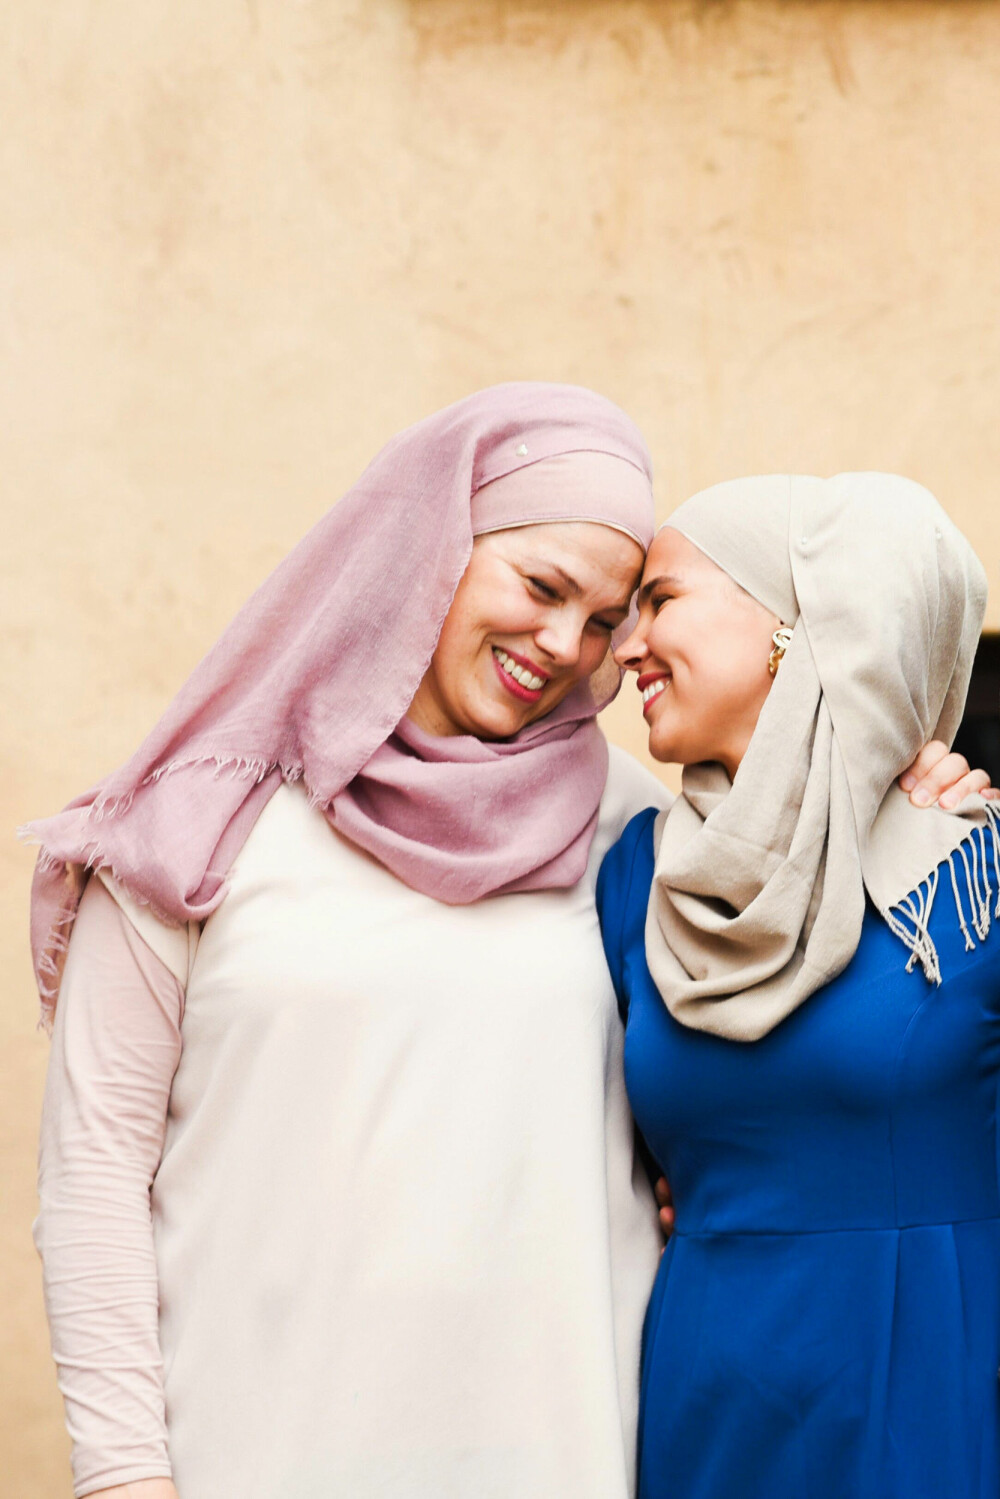 FAMILIEN VIKTIGST: Familien betyr alt for Iman. – De er grunnen til at jeg tør å gjøre alt jeg gjør. Fordi jeg vet at jeg har dem uansett, sier hun. Her med moren, Monica Meskini.